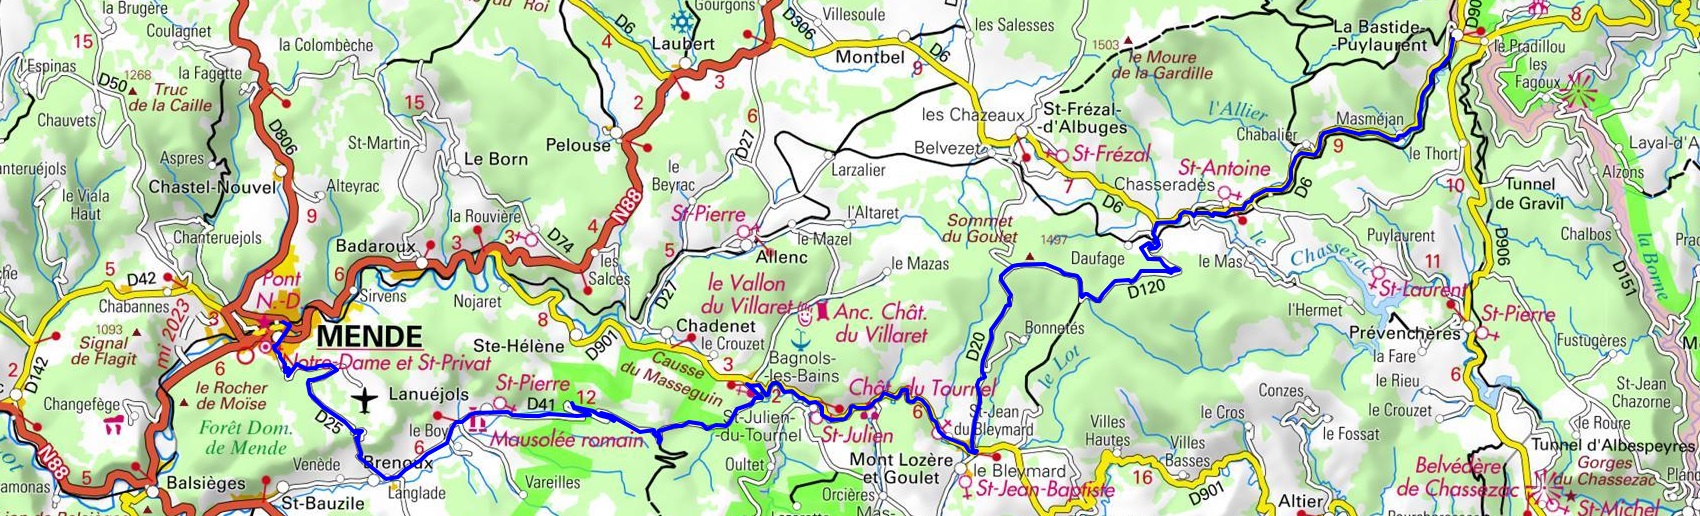 IGN Circuit en vélo de 59,4km à La Bastide-Puylaurent en Lozère